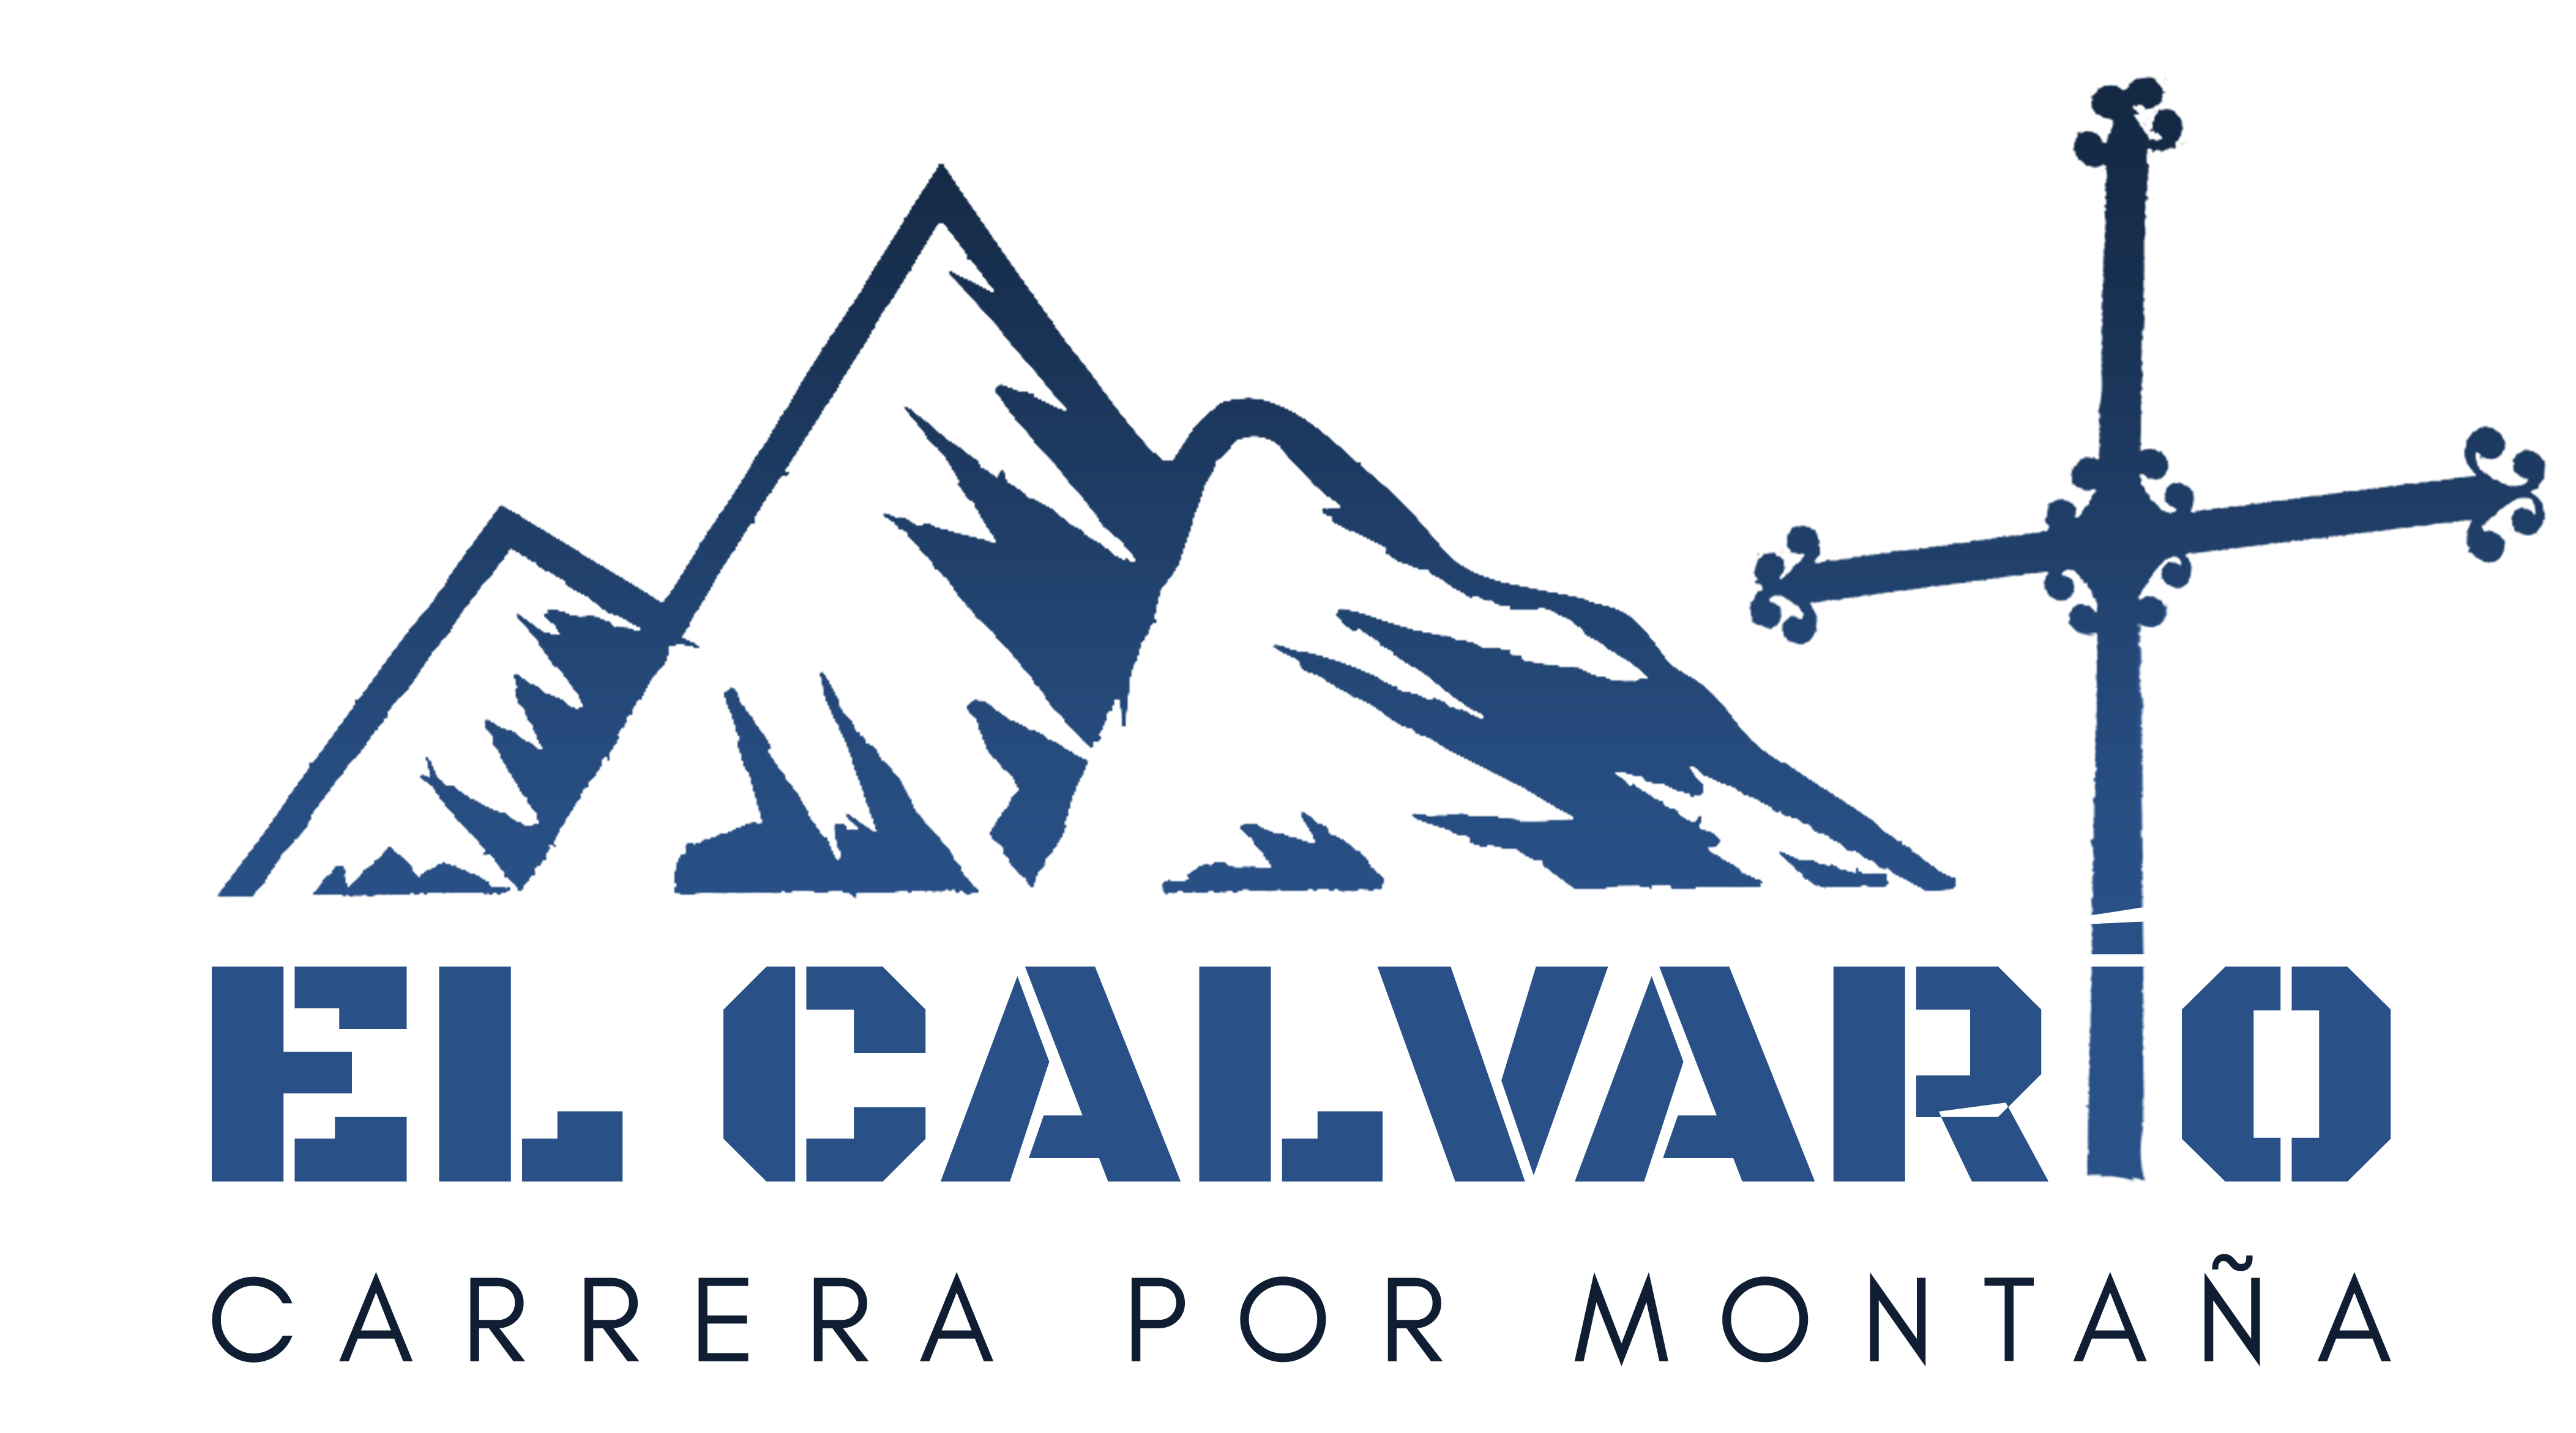 CANCELADA: Carrera por Montaña "El Calvario"